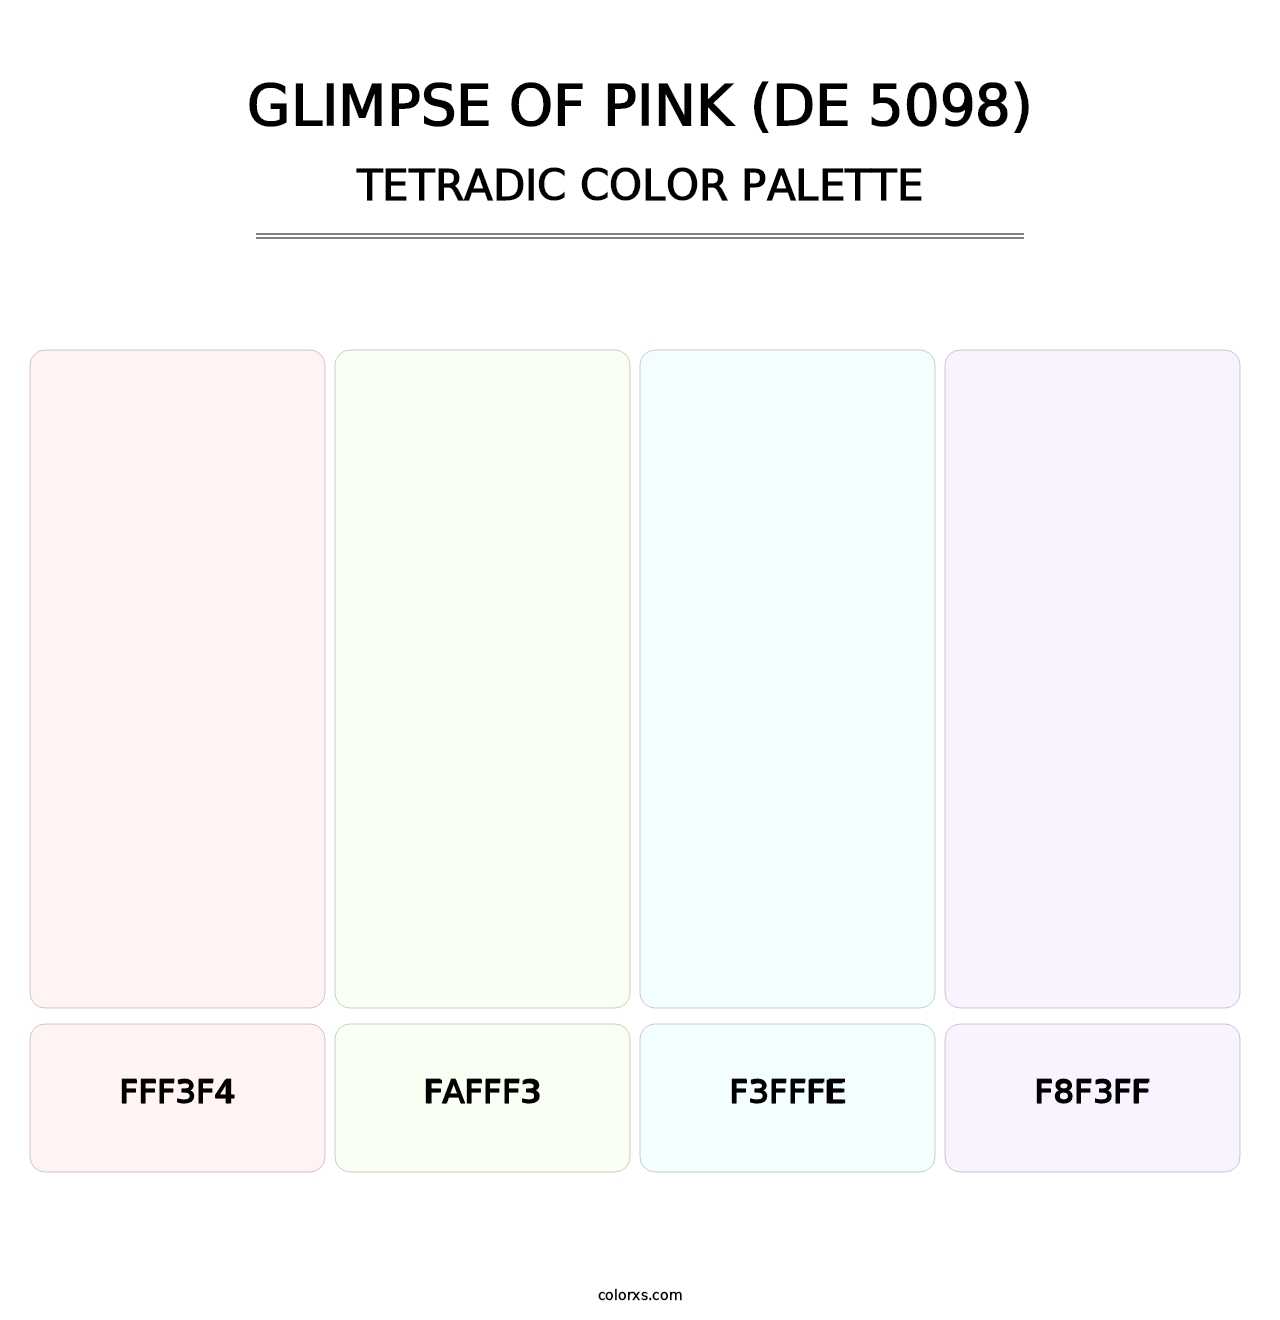 Glimpse of Pink (DE 5098) - Tetradic Color Palette